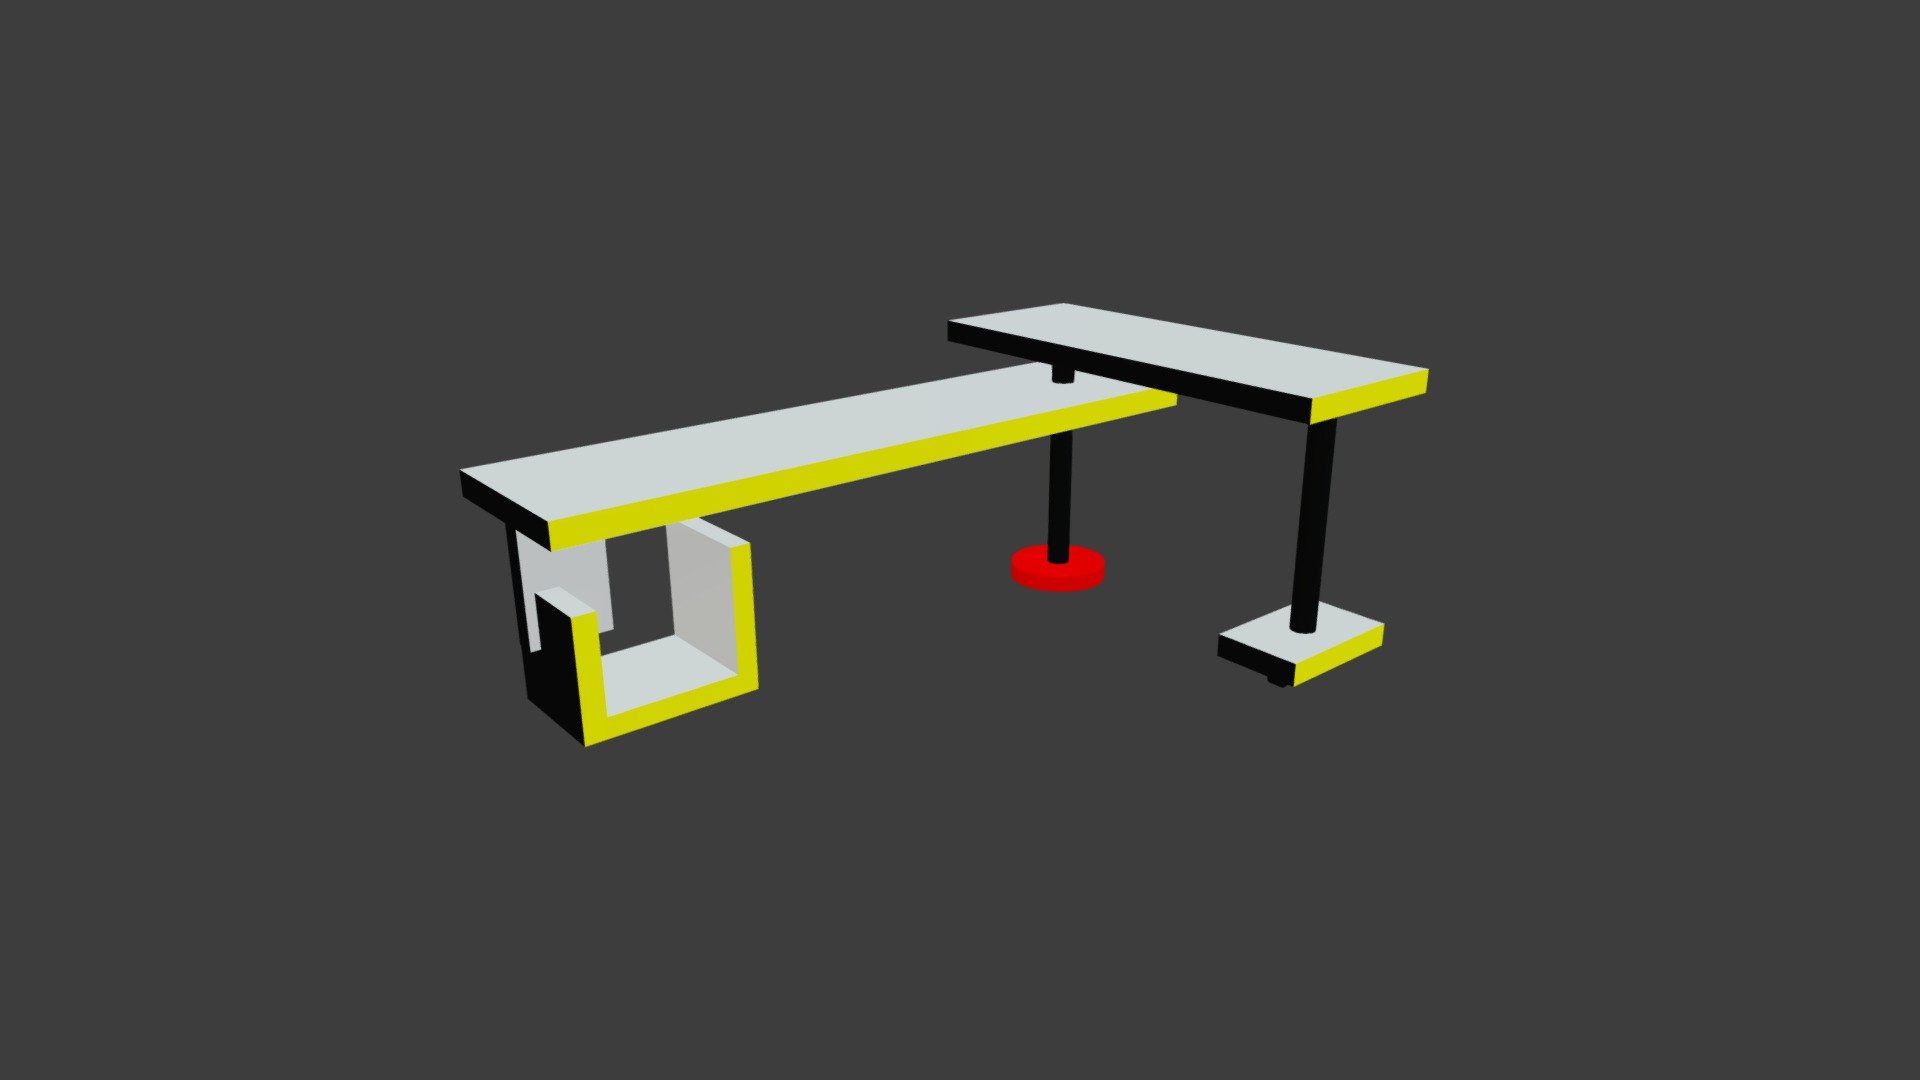 Bauhaus Table